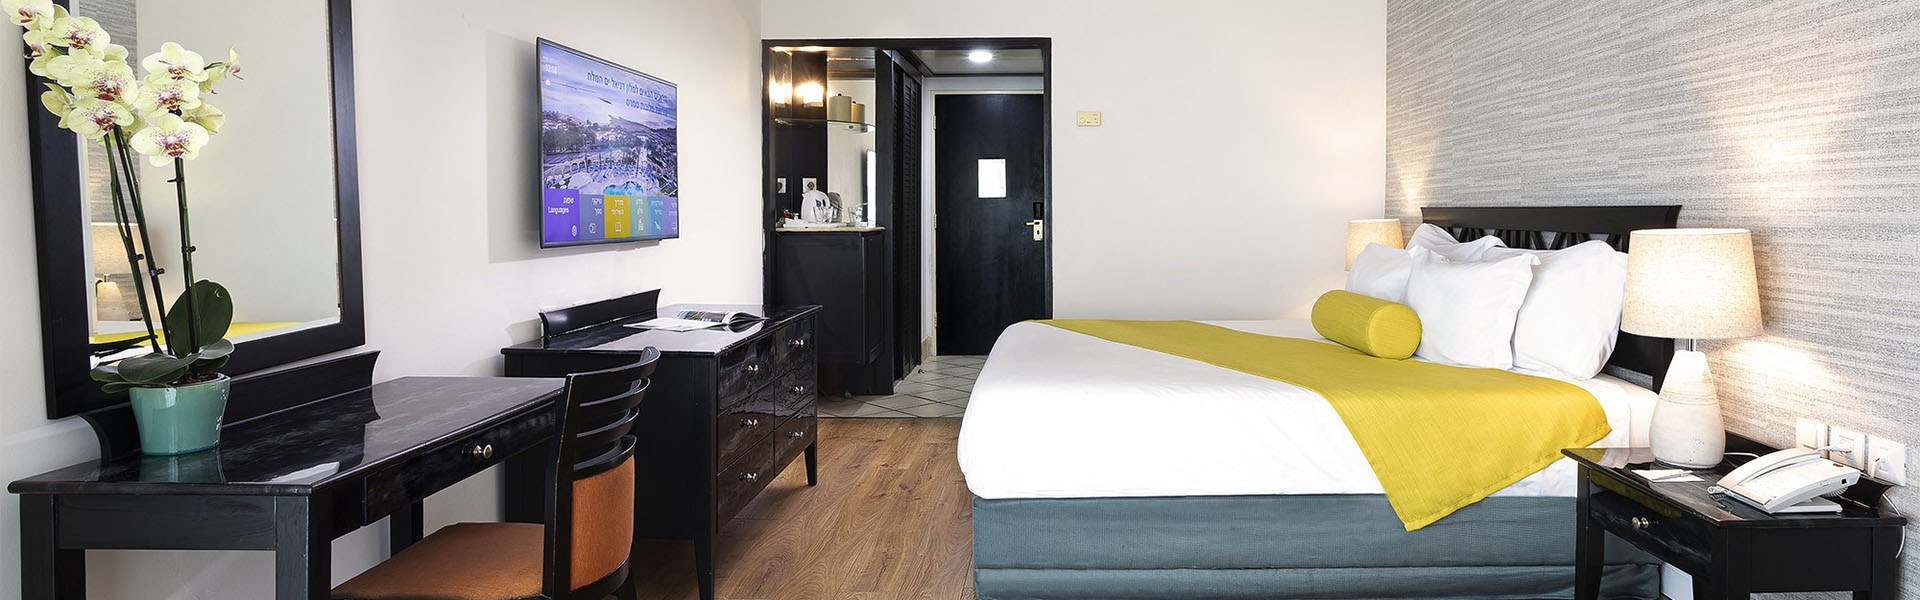 Enjoy Dead Sea Hotel - Rooms